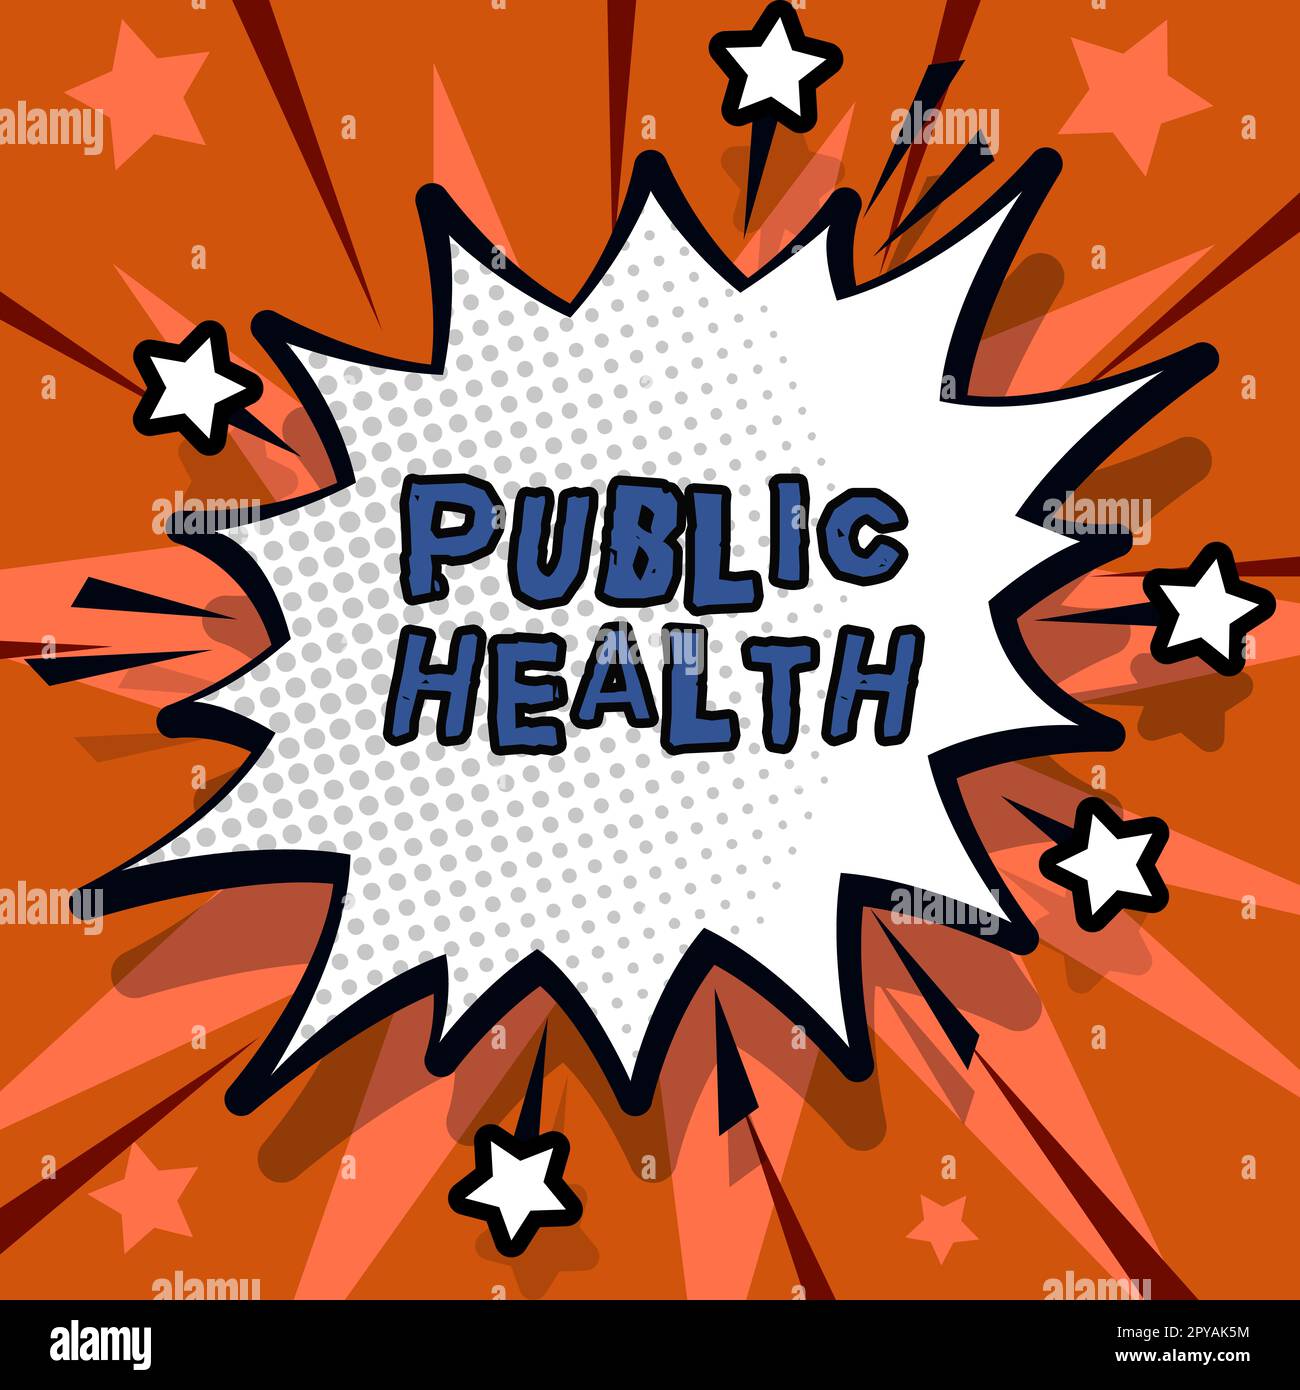 Inspiration zeigt Zeichen Public Health. Internetkonzept zur Förderung einer gesunden Lebensweise für die Gemeinschaft und ihre Menschen Stockfoto